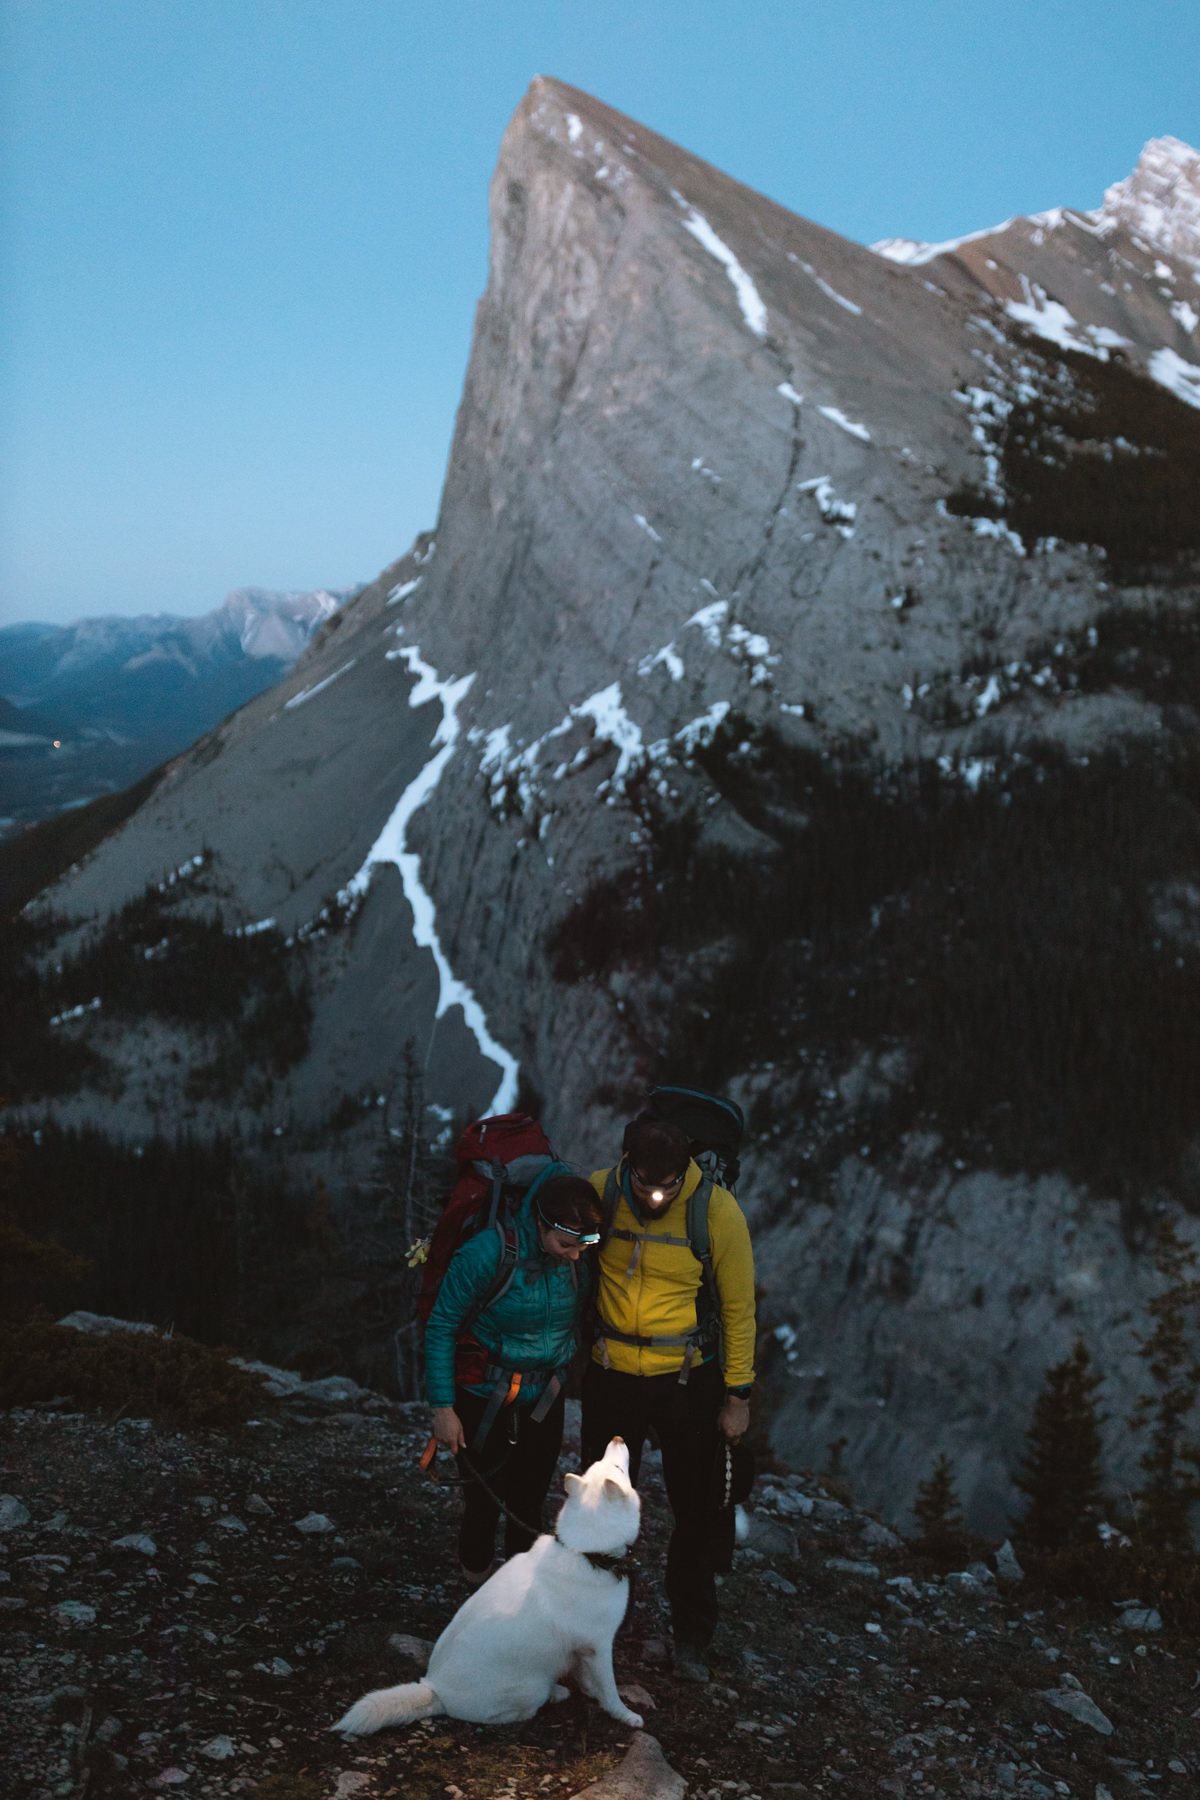 Banff anniversary photographer - Image 30